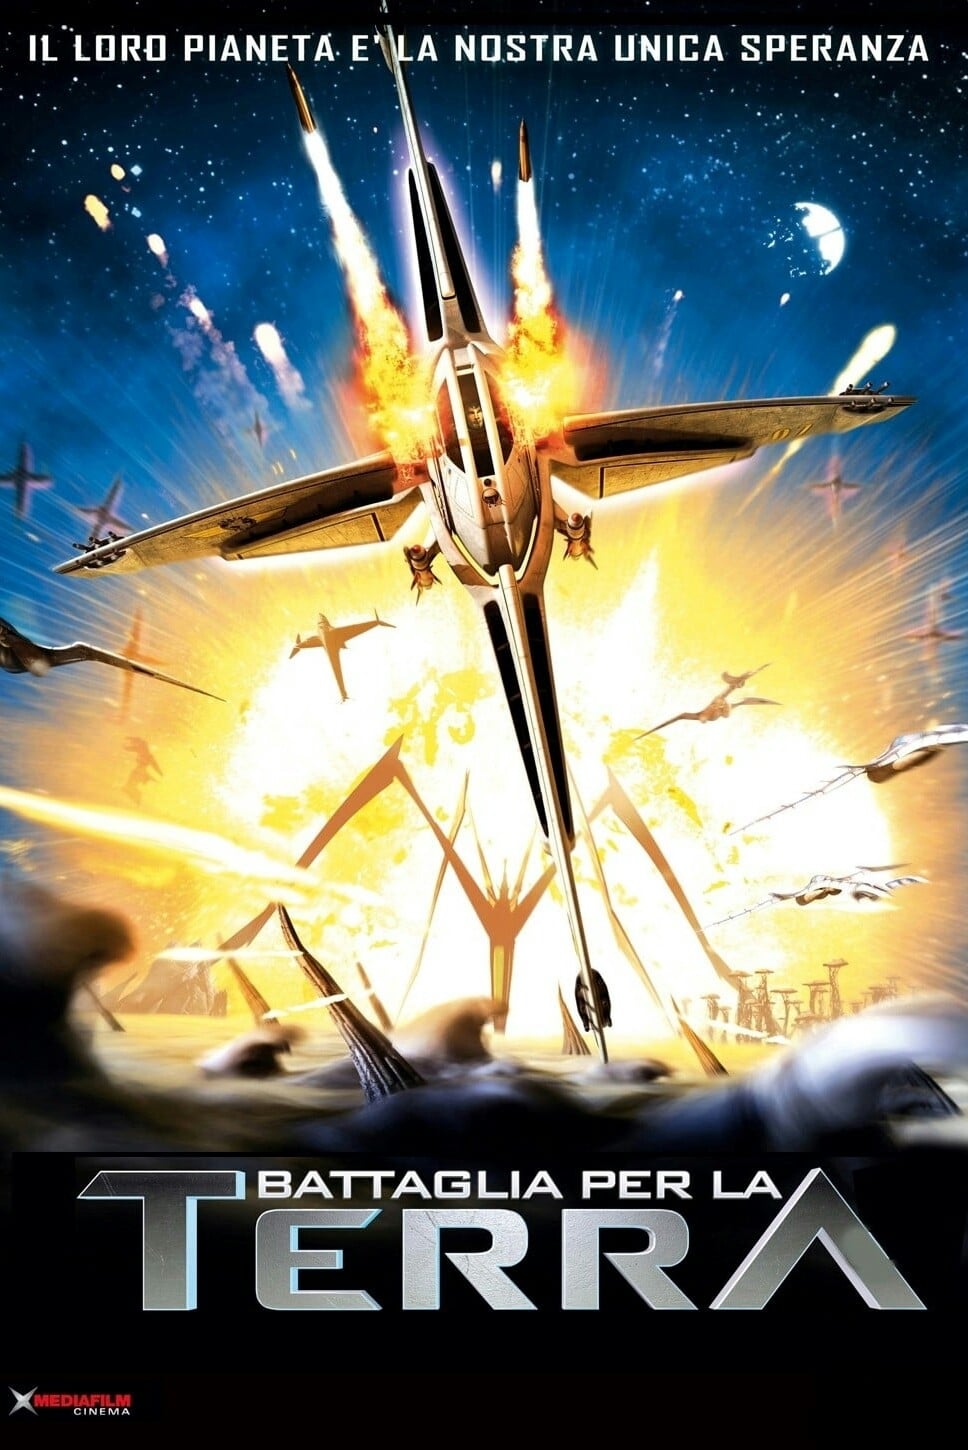 battle for terra full movie download